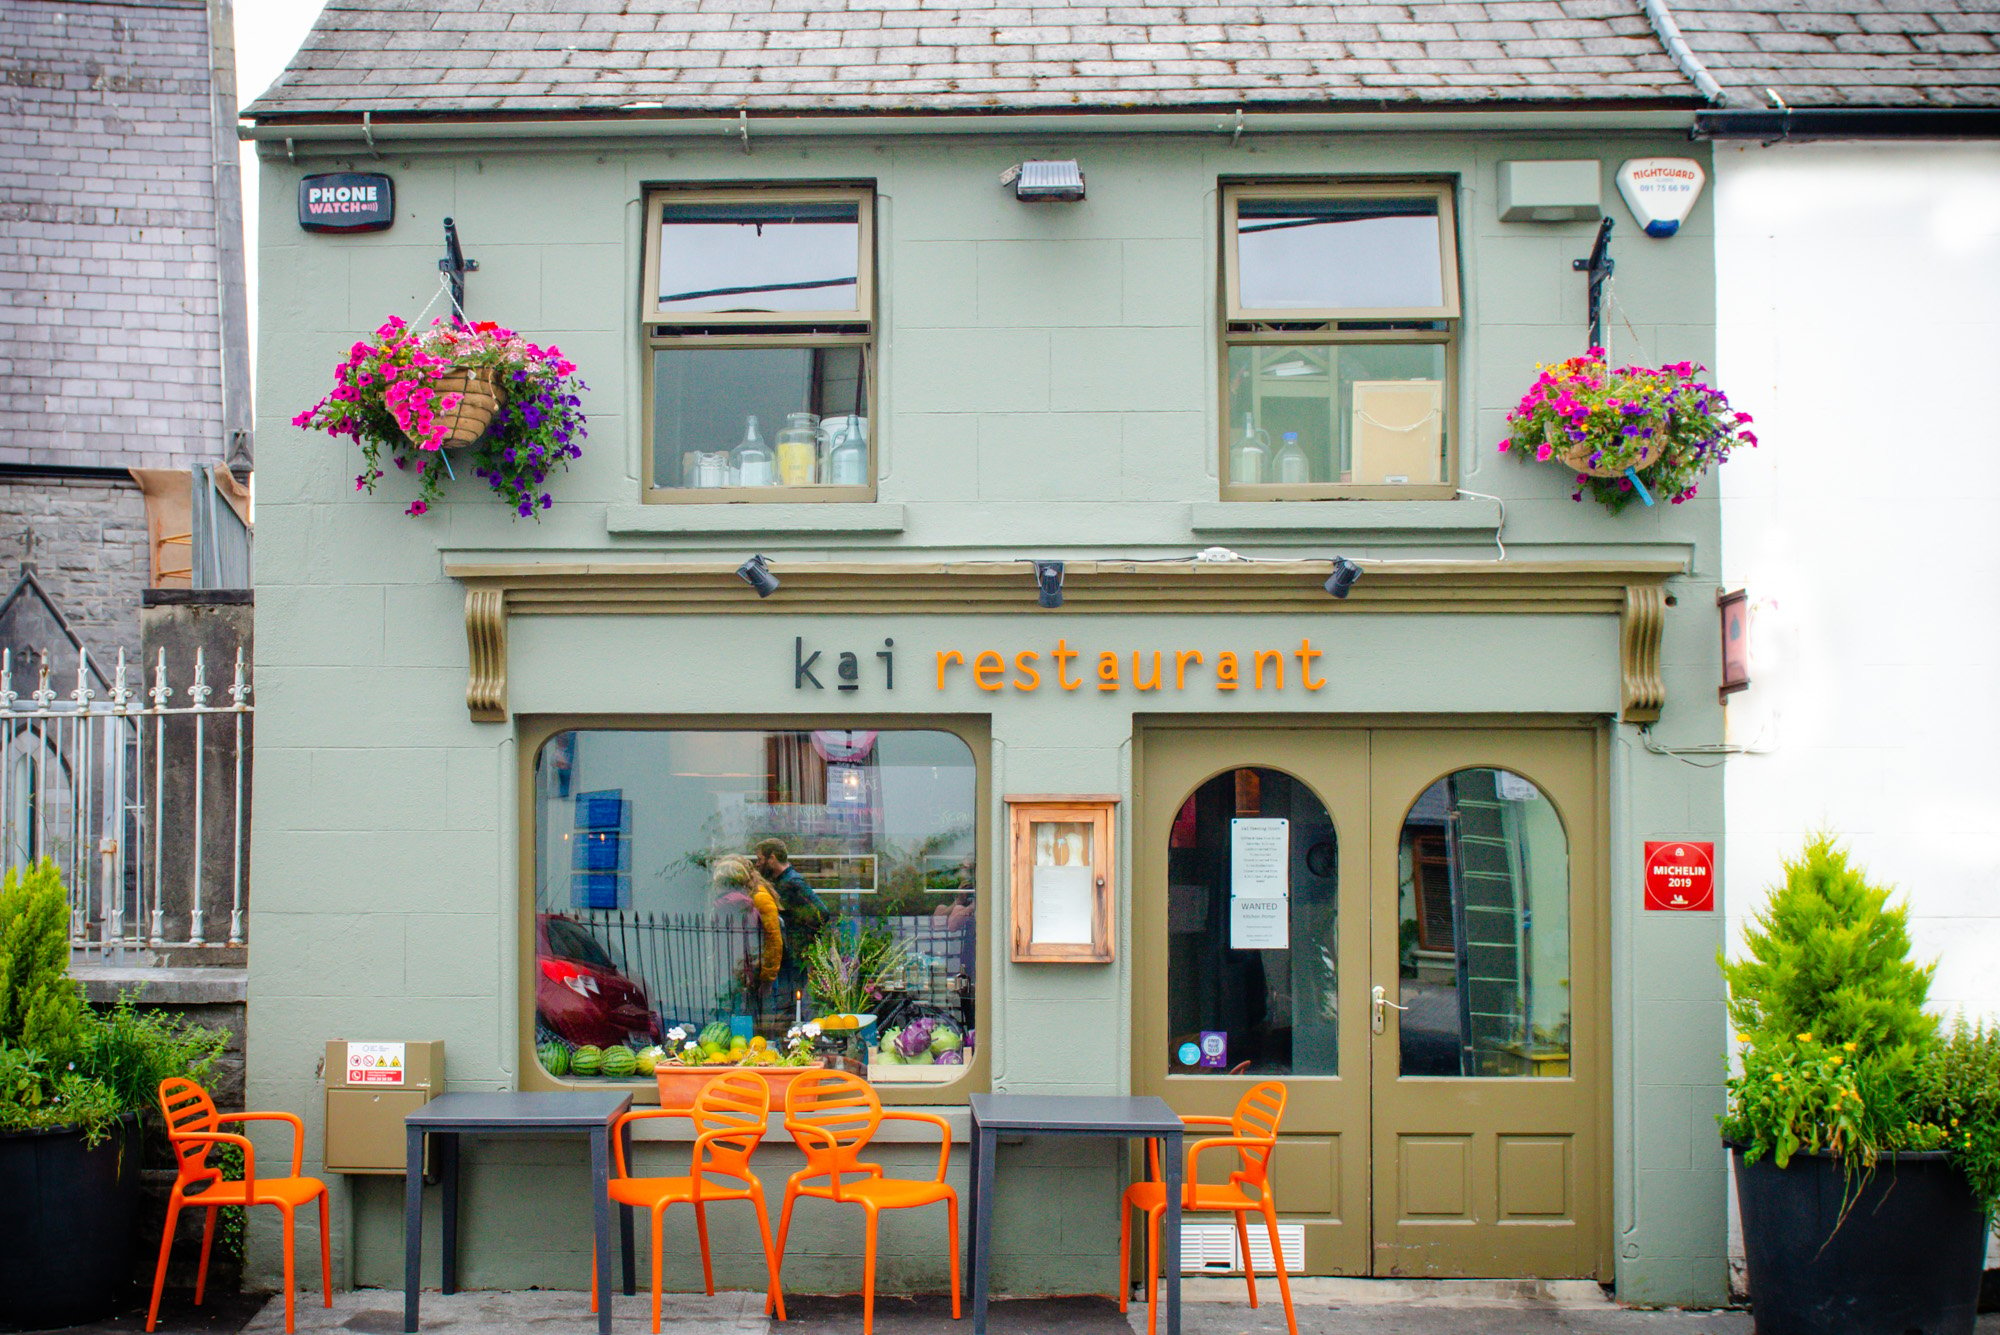 Kai Restaurant - Galway, Irlanda - 30 Finest Michelin Star Restaurants in Europe